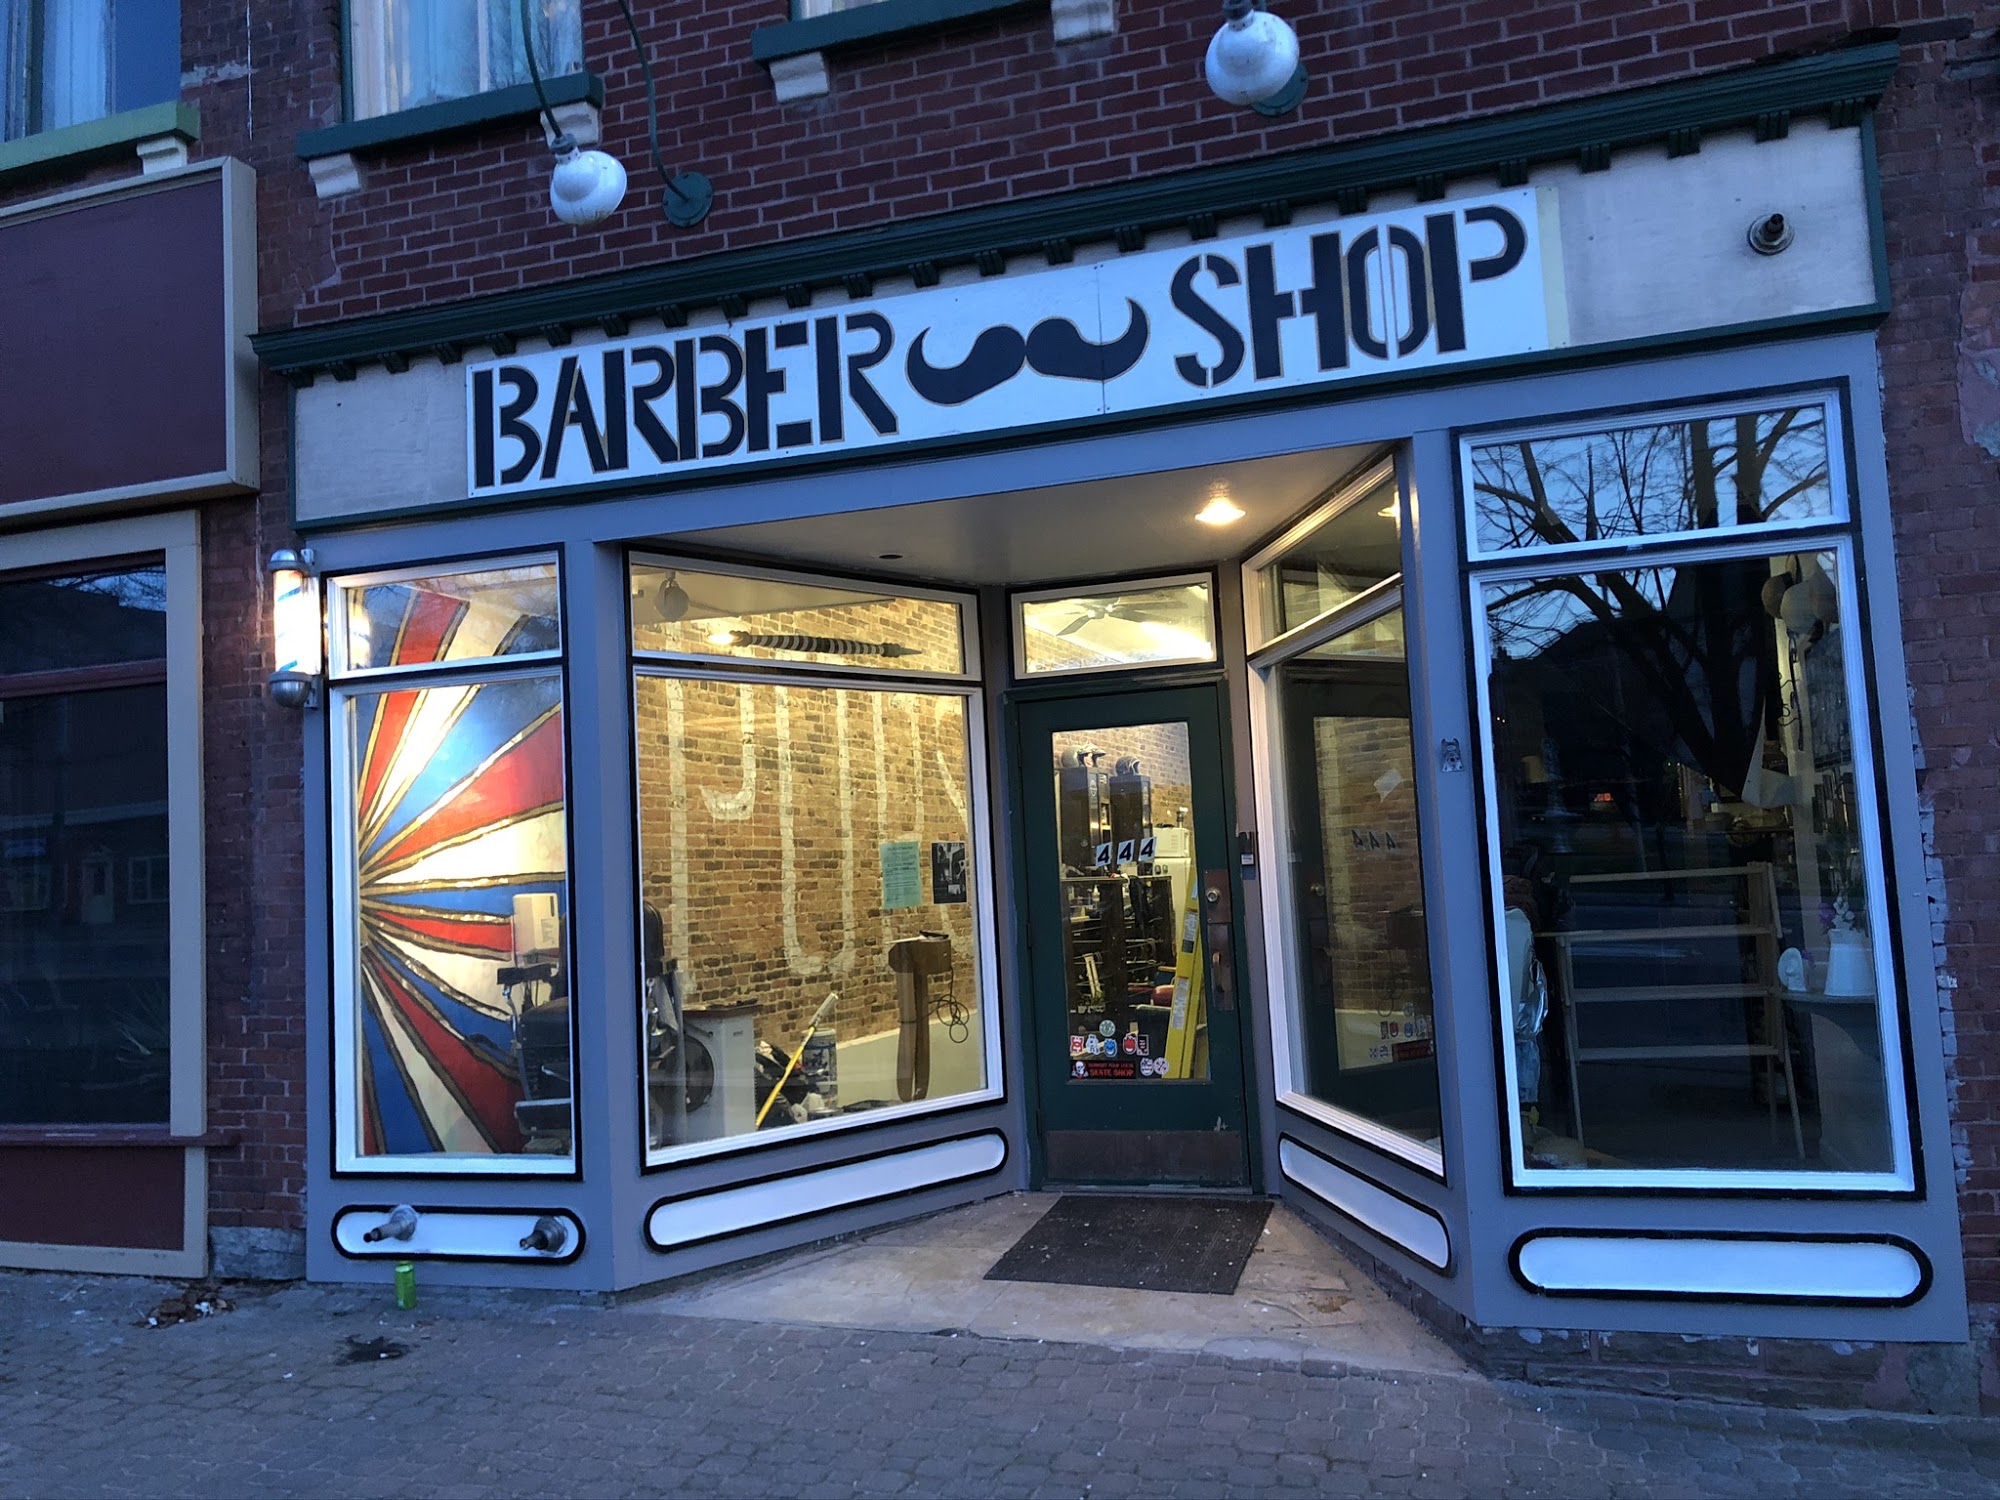 Pops Barber Shop